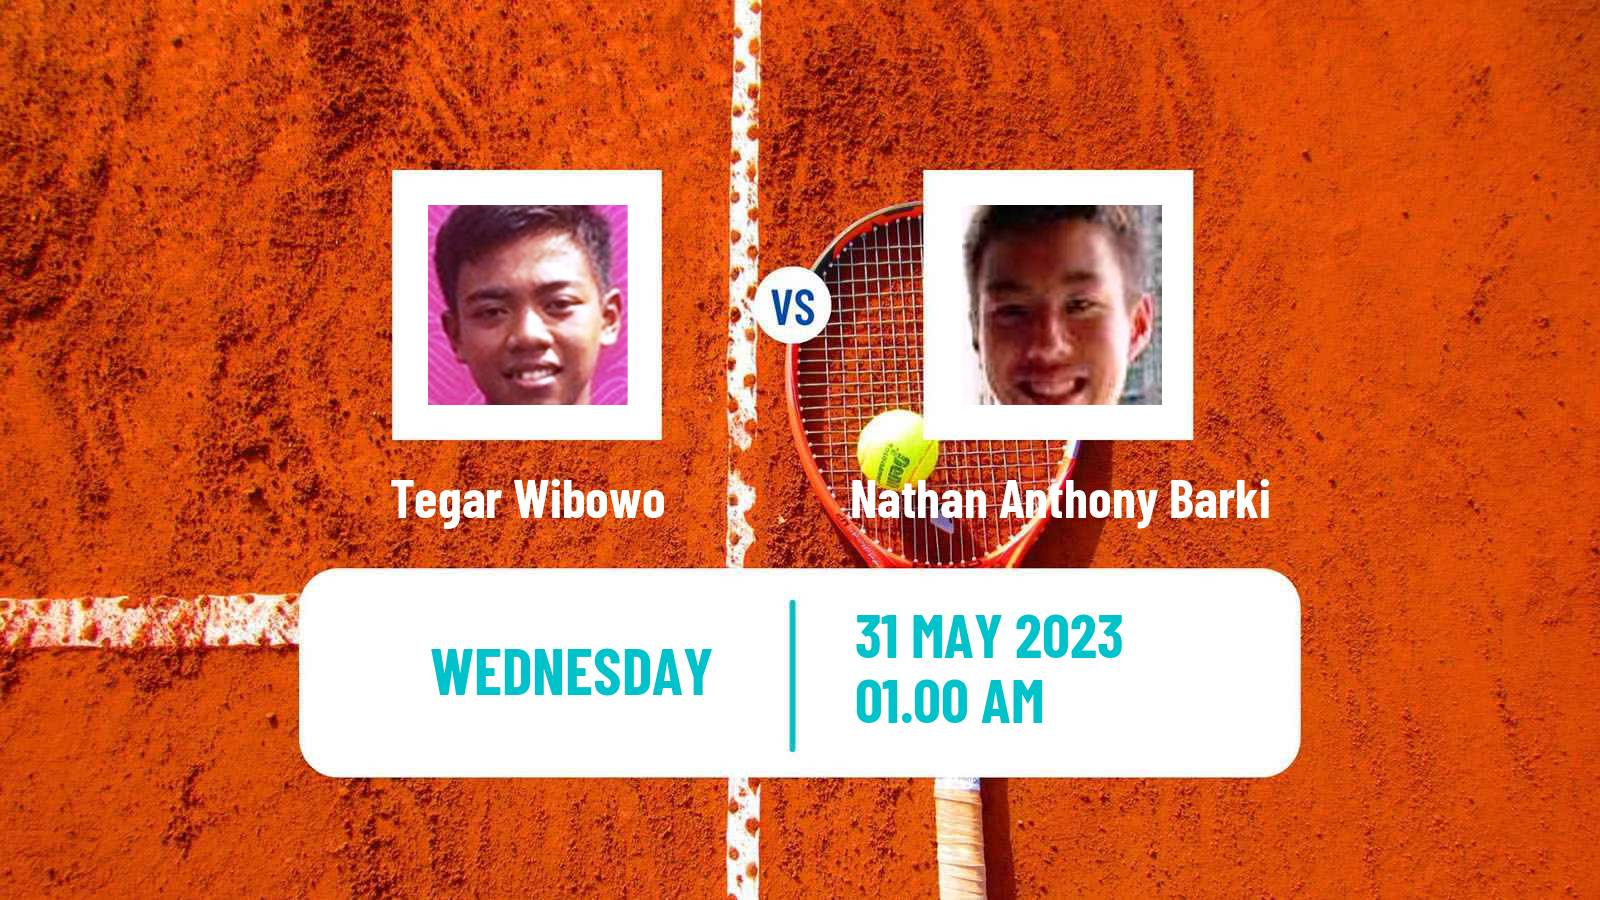 Tennis ITF M25 Jakarta 4 Men Tegar Wibowo - Nathan Anthony Barki